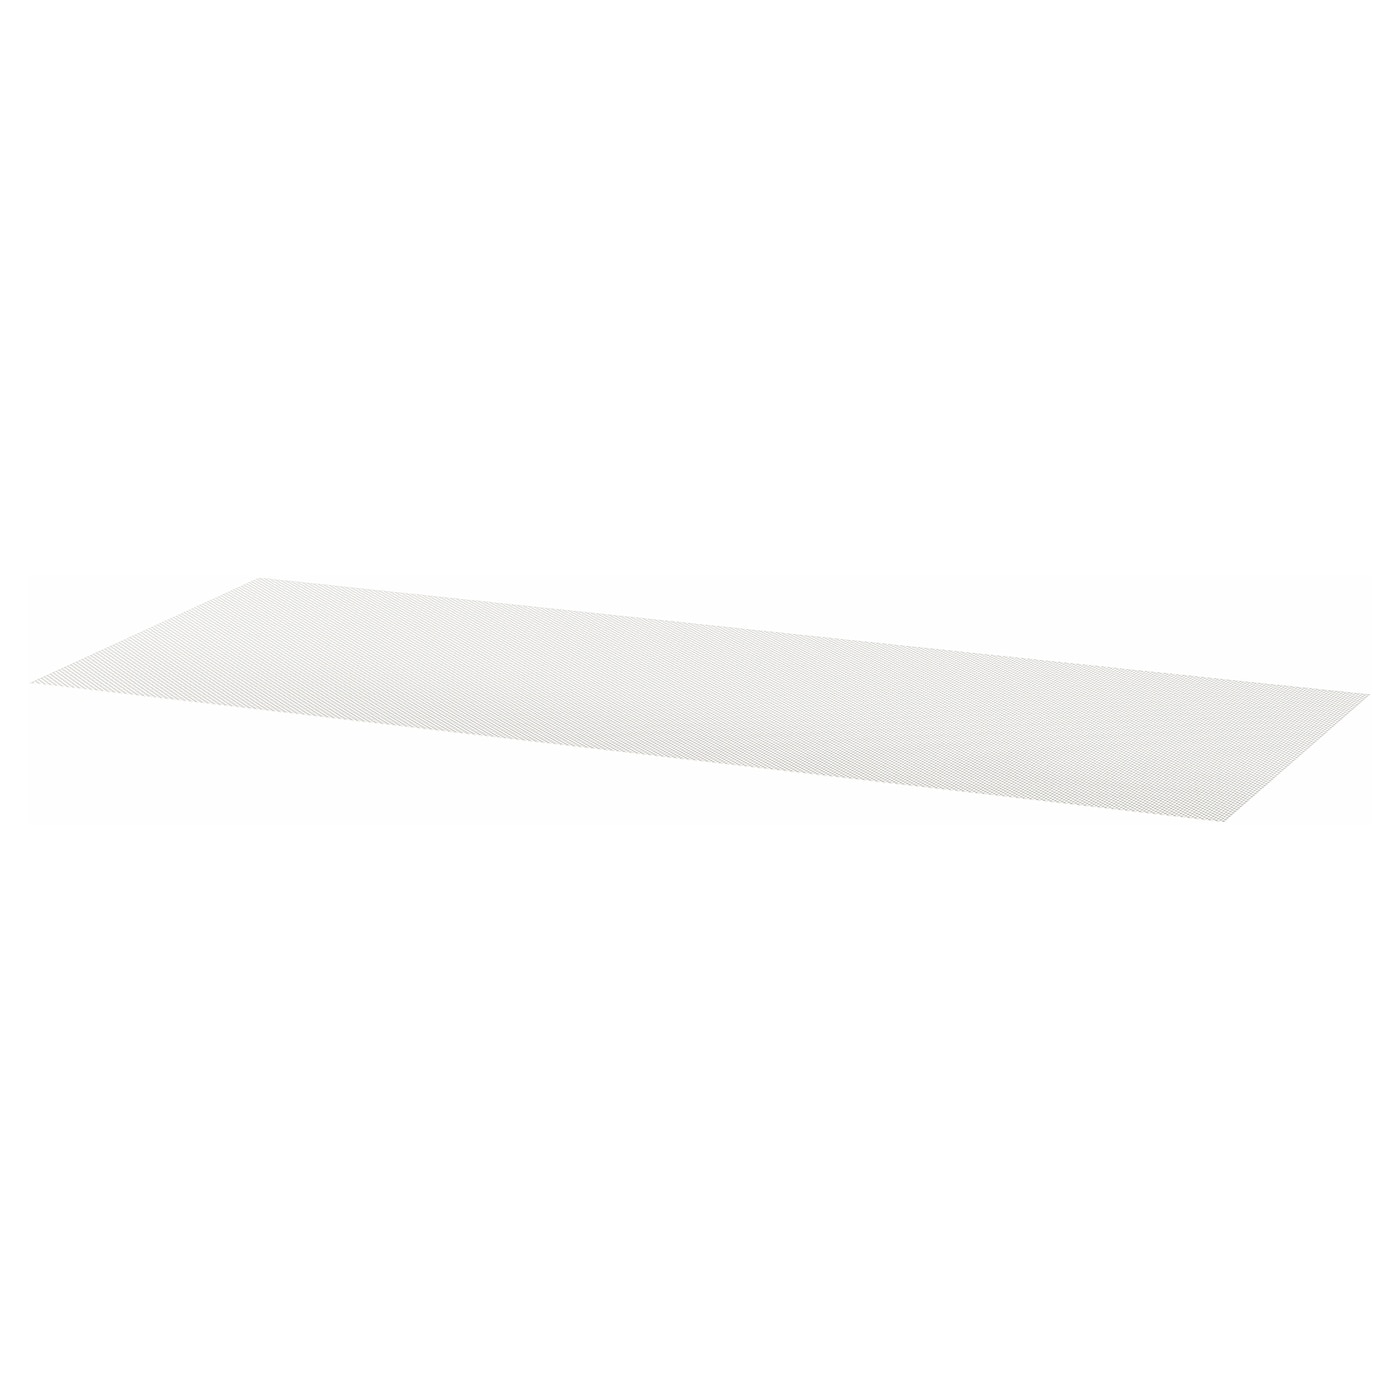 Коврик для ящика - VARIERA IKEA/ ВАРЬЕРА ИКЕА, 150х50 см, белый